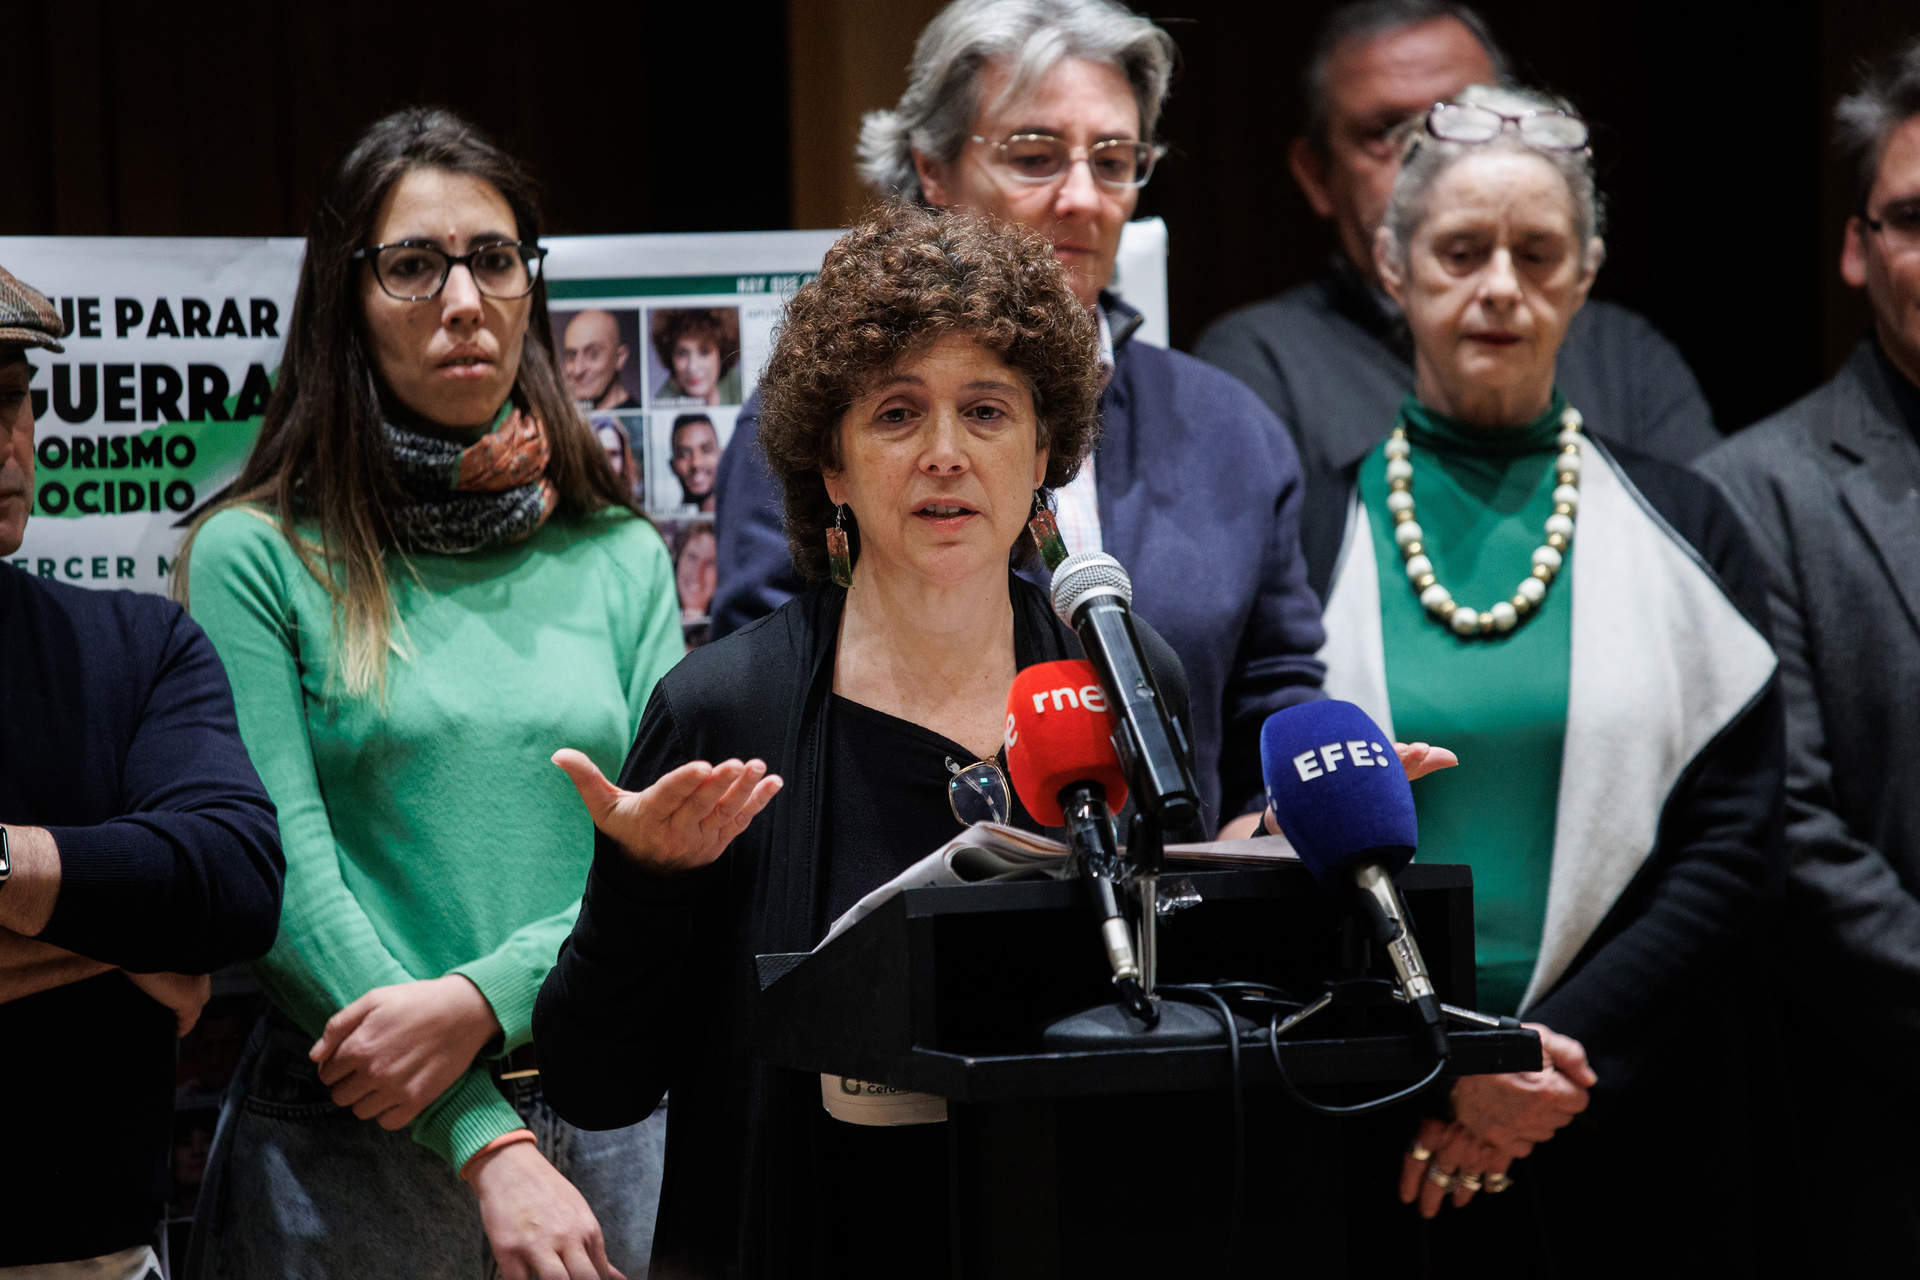 Recortes Cero sitúa a su portavoz nacional Nuria Suárez como cabeza de lista para las elecciones europeas